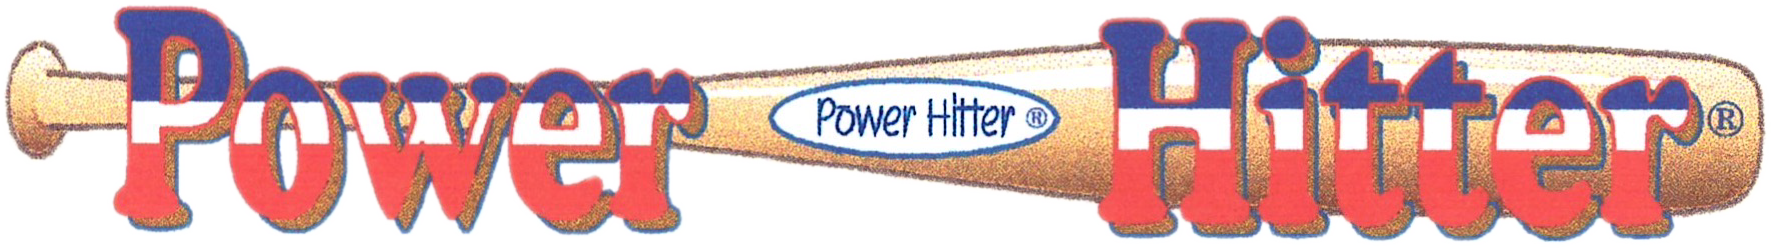 Power Hitter Logo | SportsBallKids